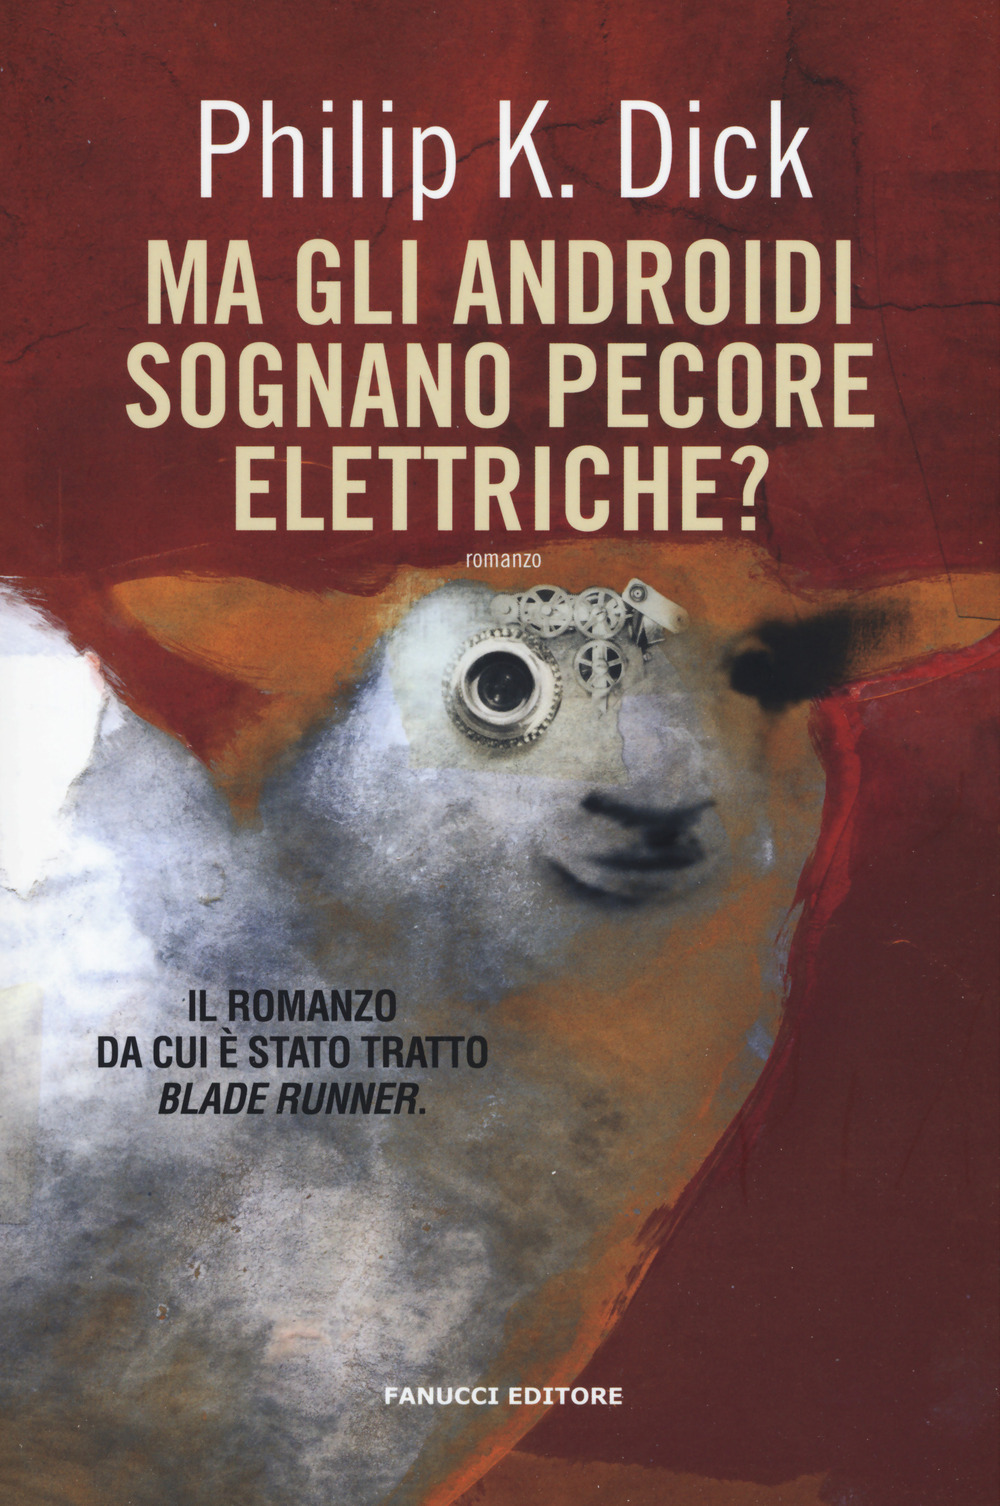 Ma gli androidi sognano pecore elettriche?